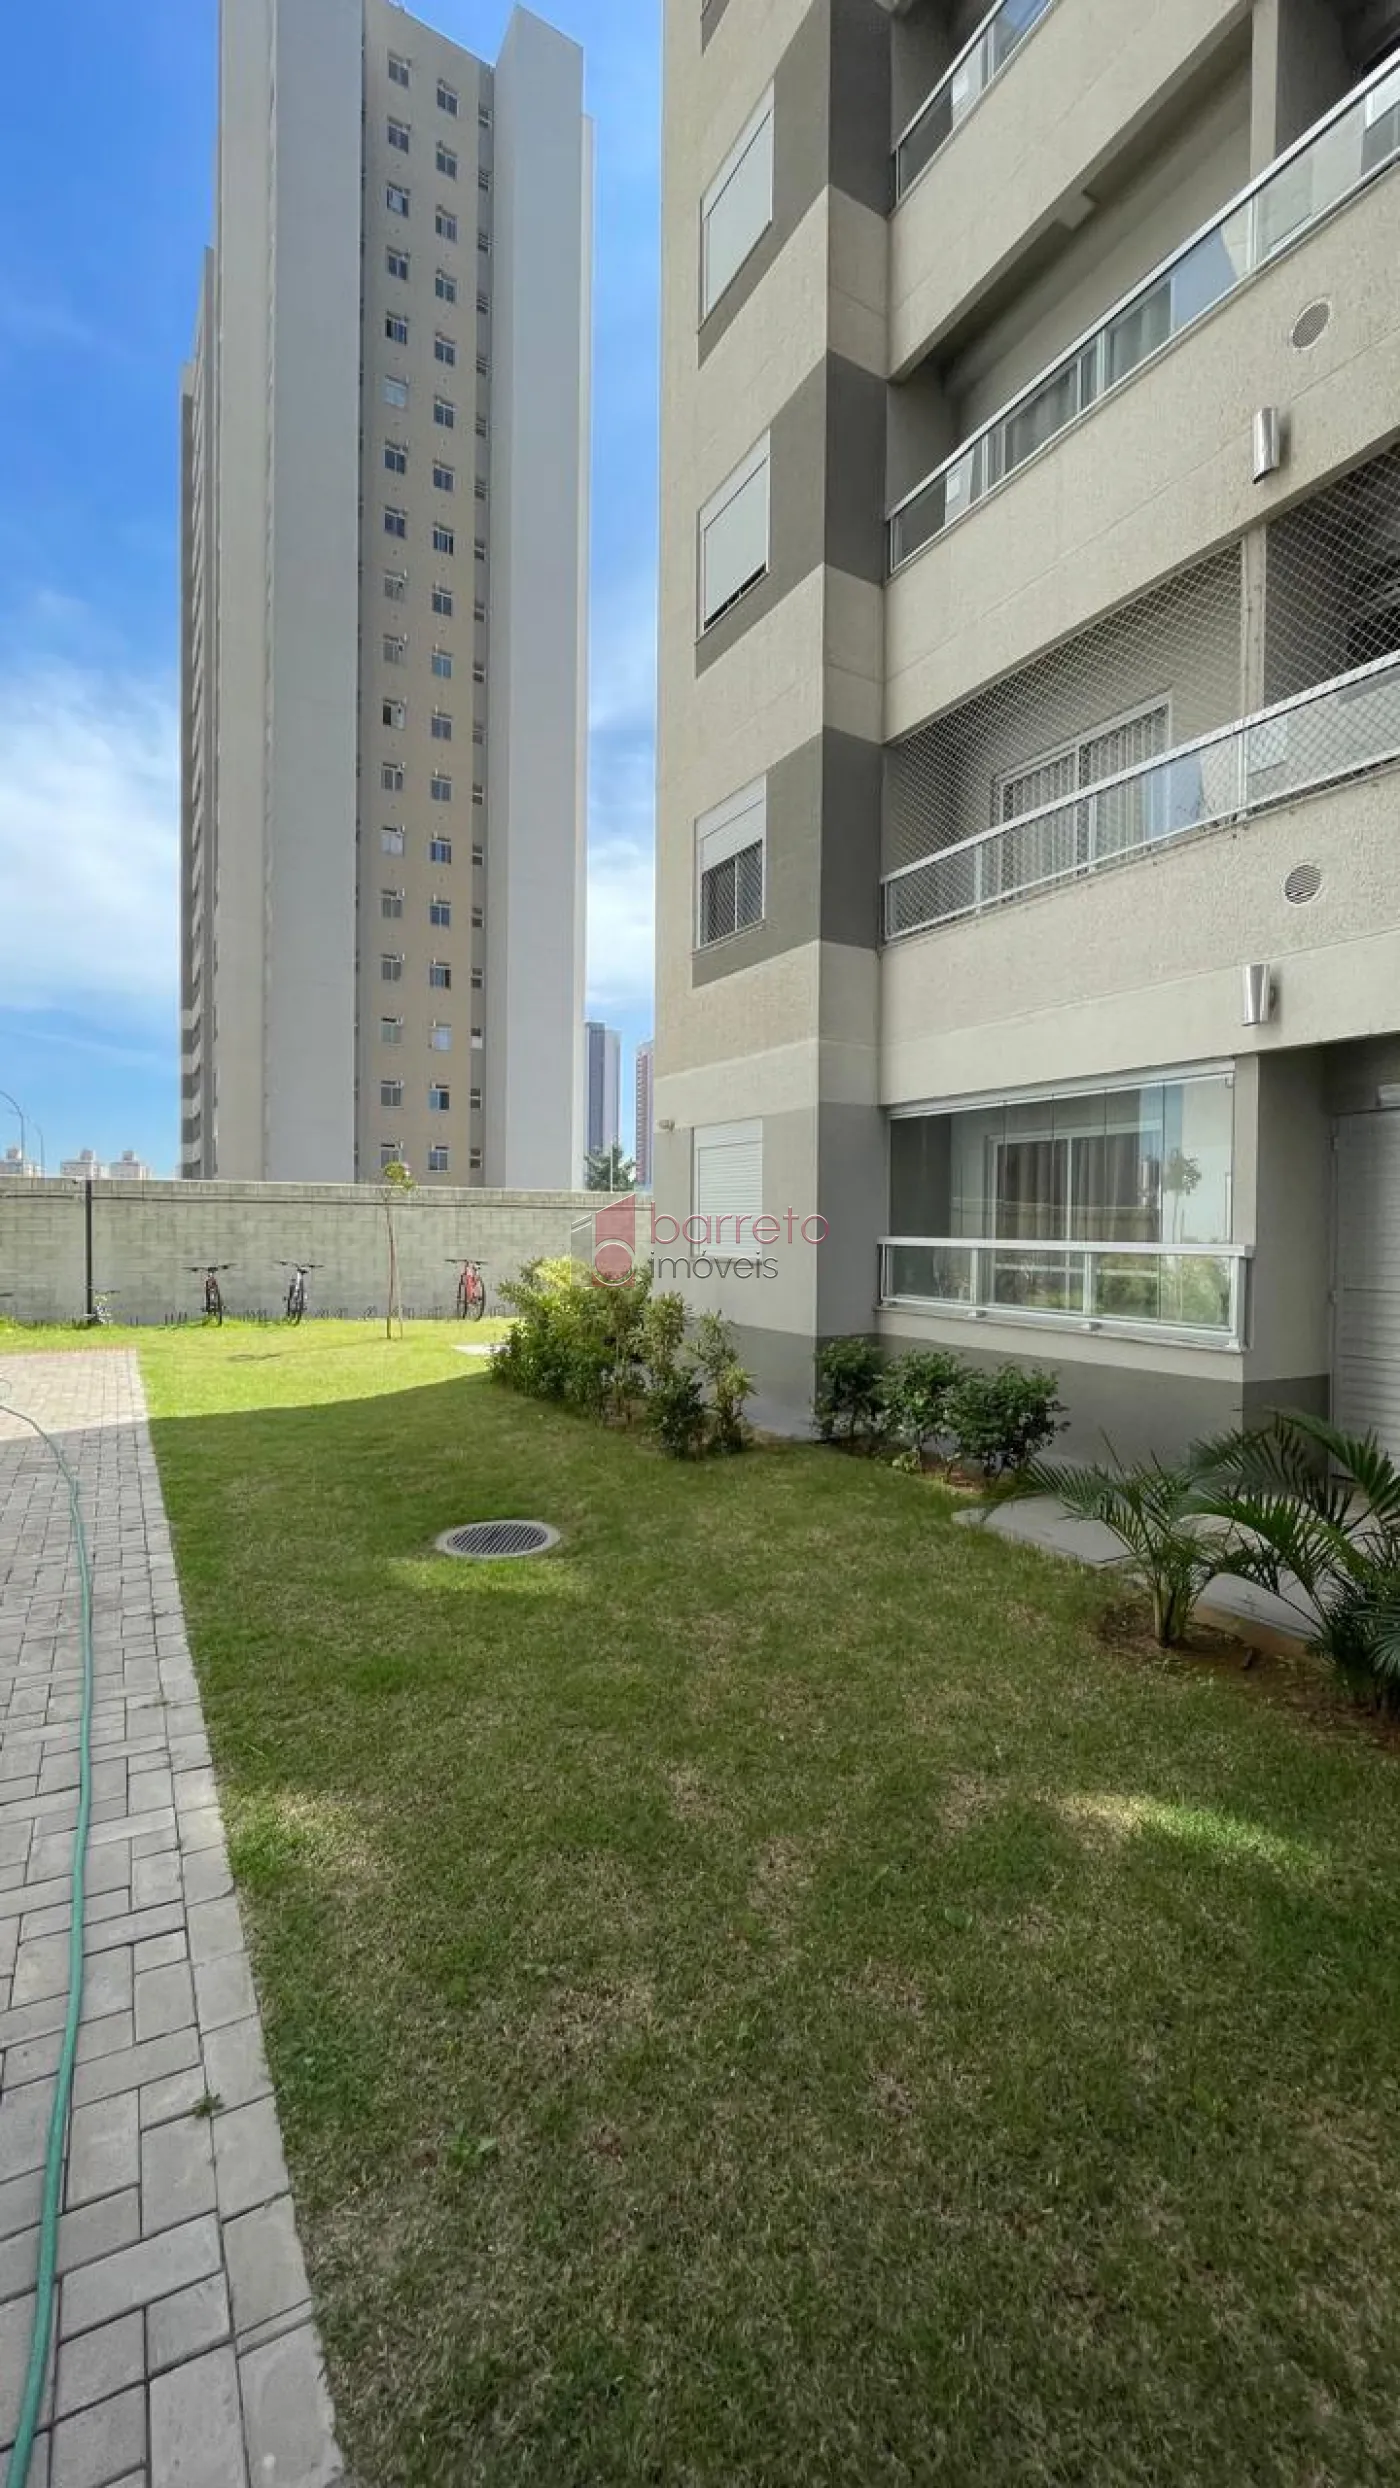 Alugar Apartamento / Padrão em Jundiaí R$ 1.800,00 - Foto 13